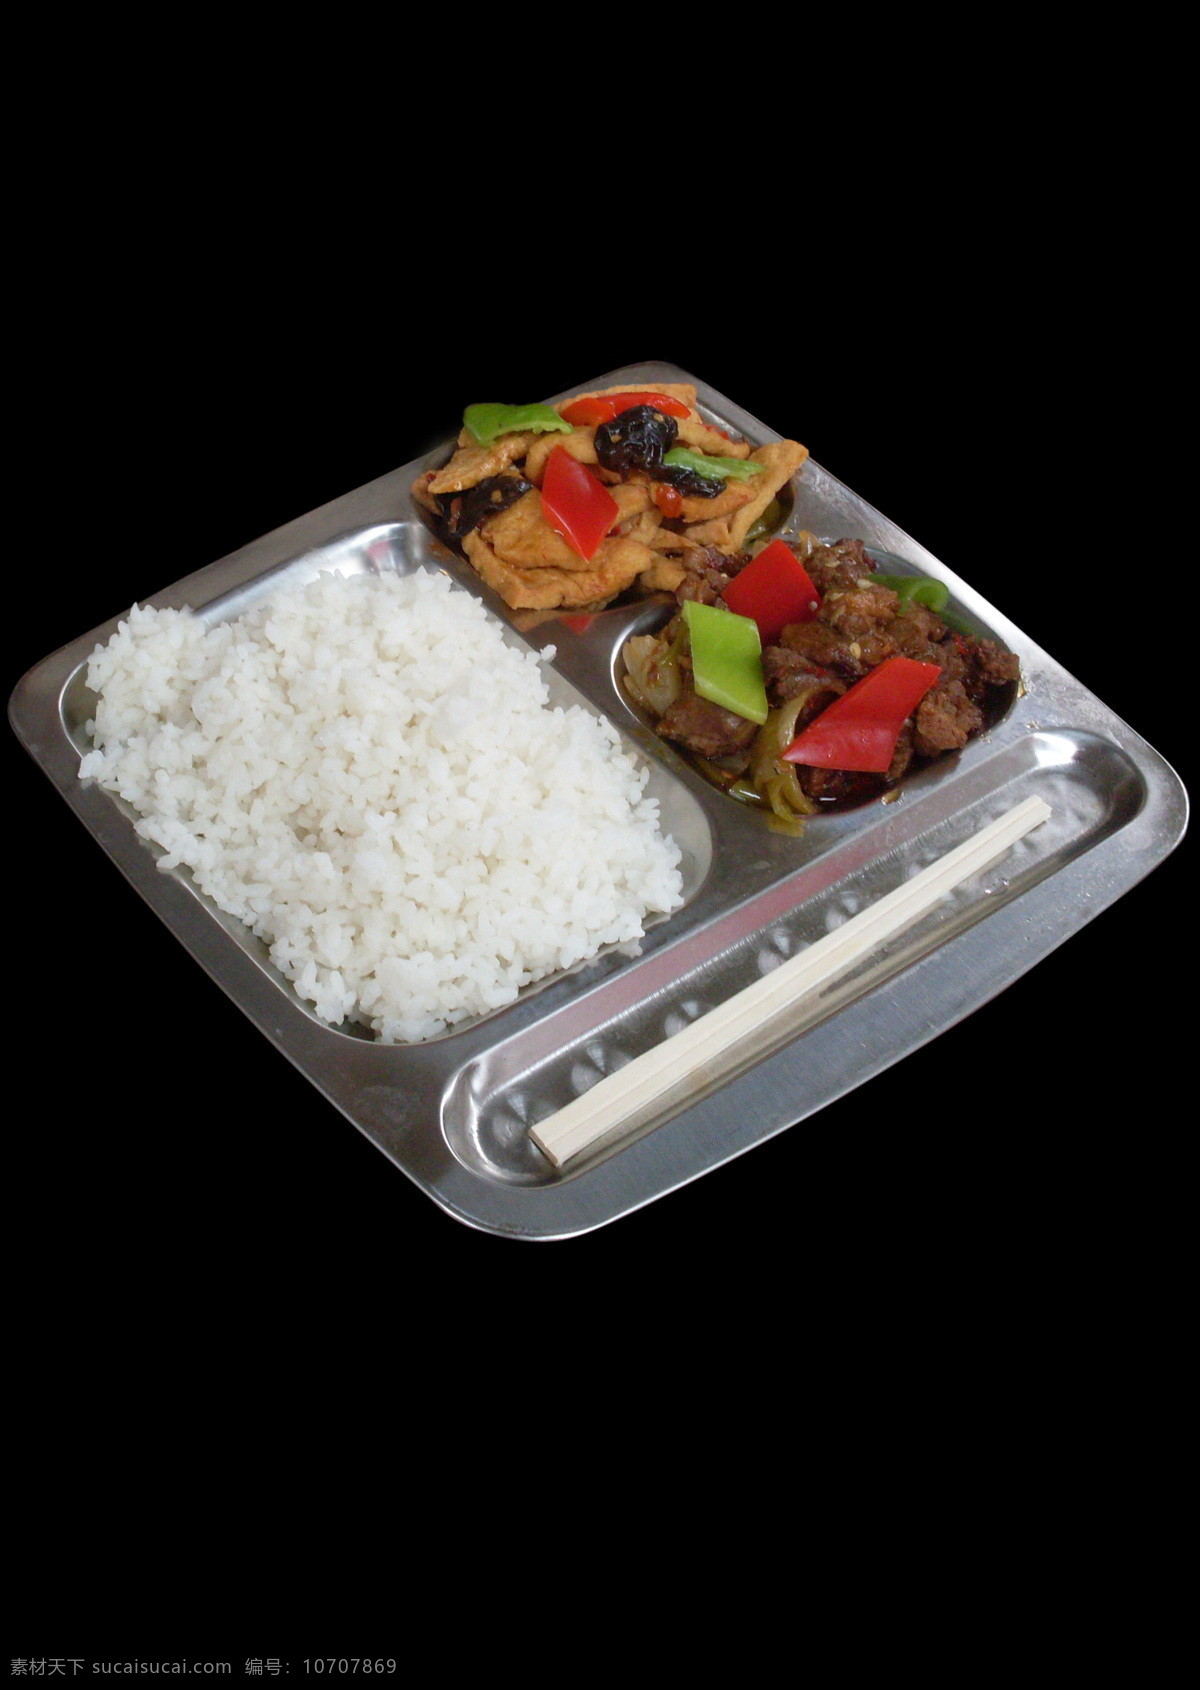 快餐盒饭 快餐 盒饭 风味小吃 精美菜肴 米饭 传统美食 餐饮美食